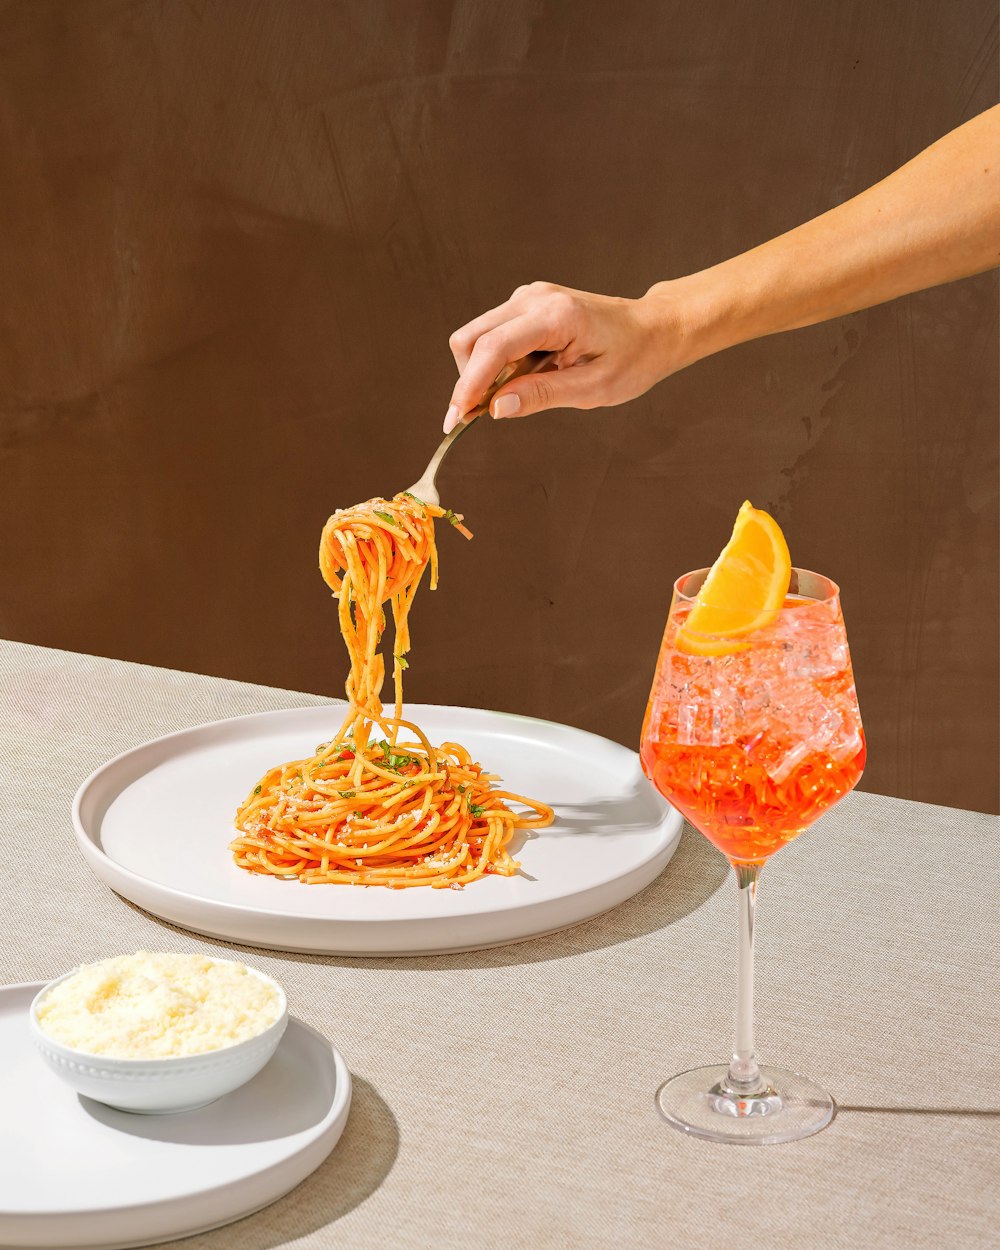 Una persona está comiendo espaguetis en un plato